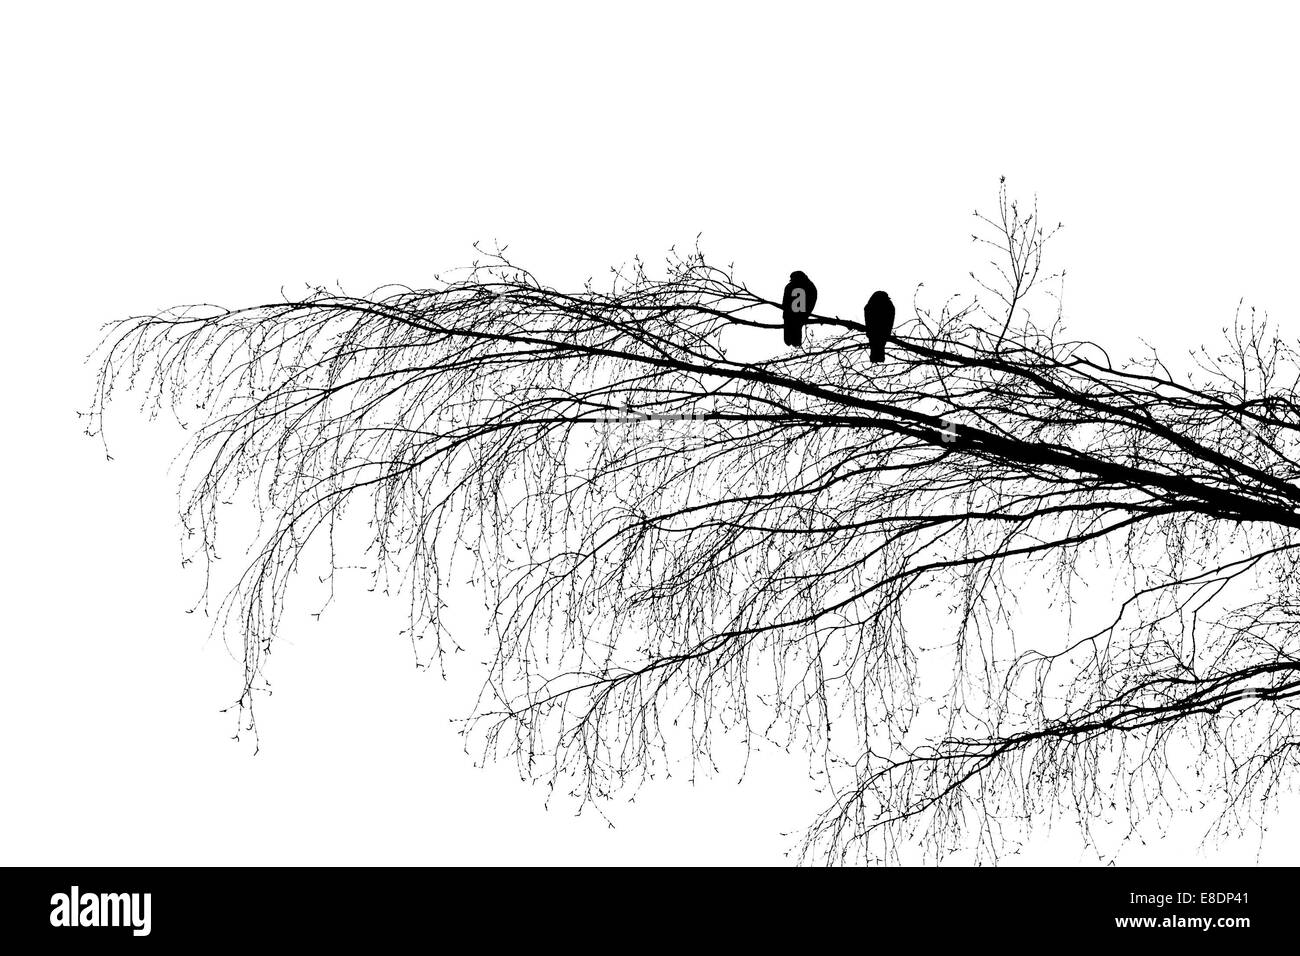 Bois deux pigeons sur une branche d'arbre, à la recherche dans le sens inverse. Silhouette Photographie noir et blanc Banque D'Images